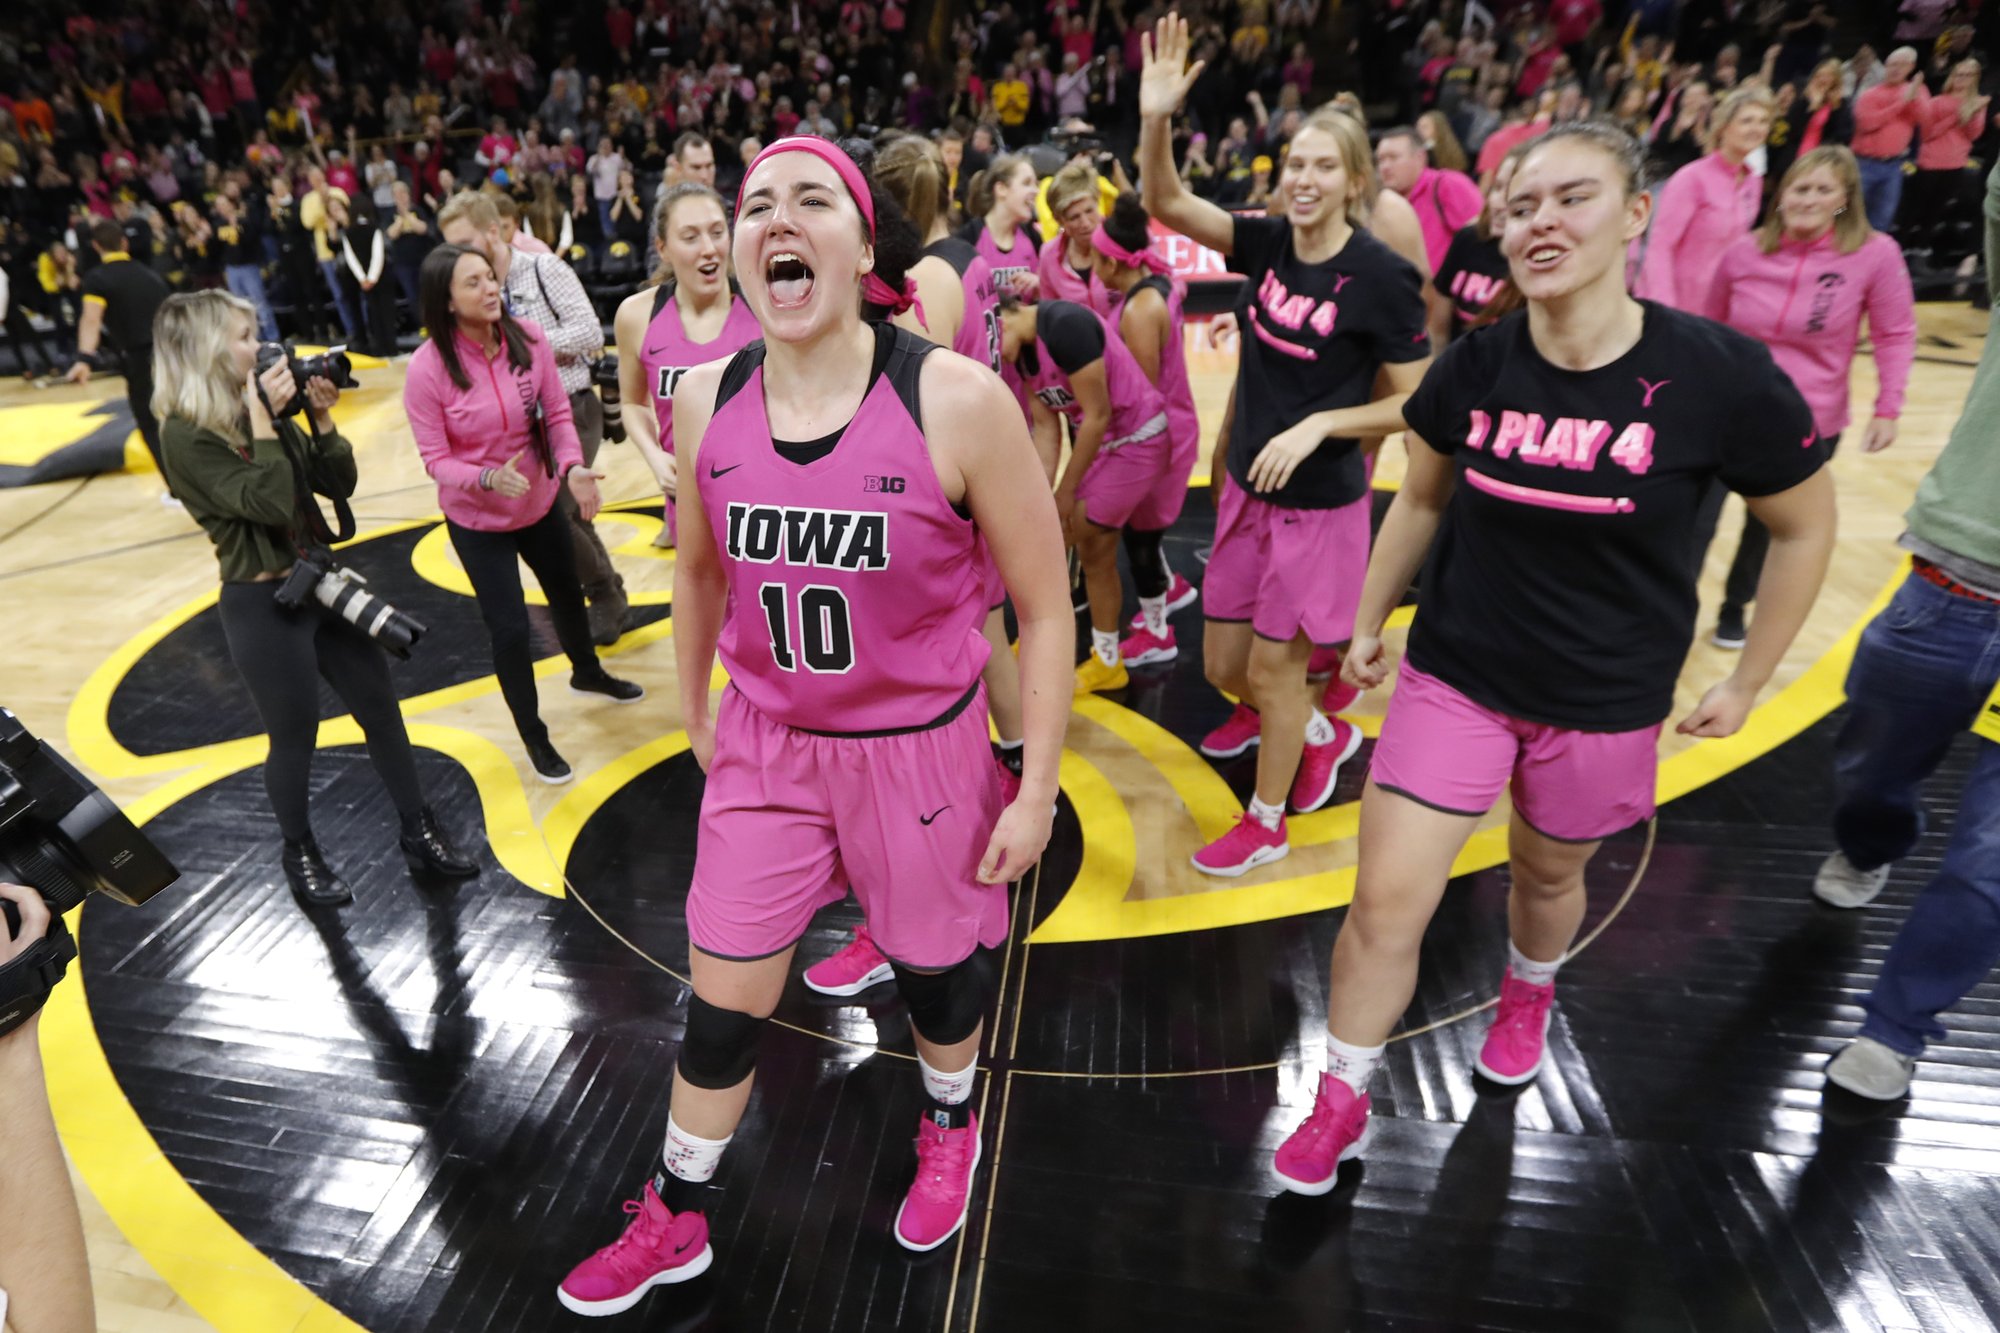 San Diego Gulls Defeat Iowa in Pink Jerseys to Benefit Cancer